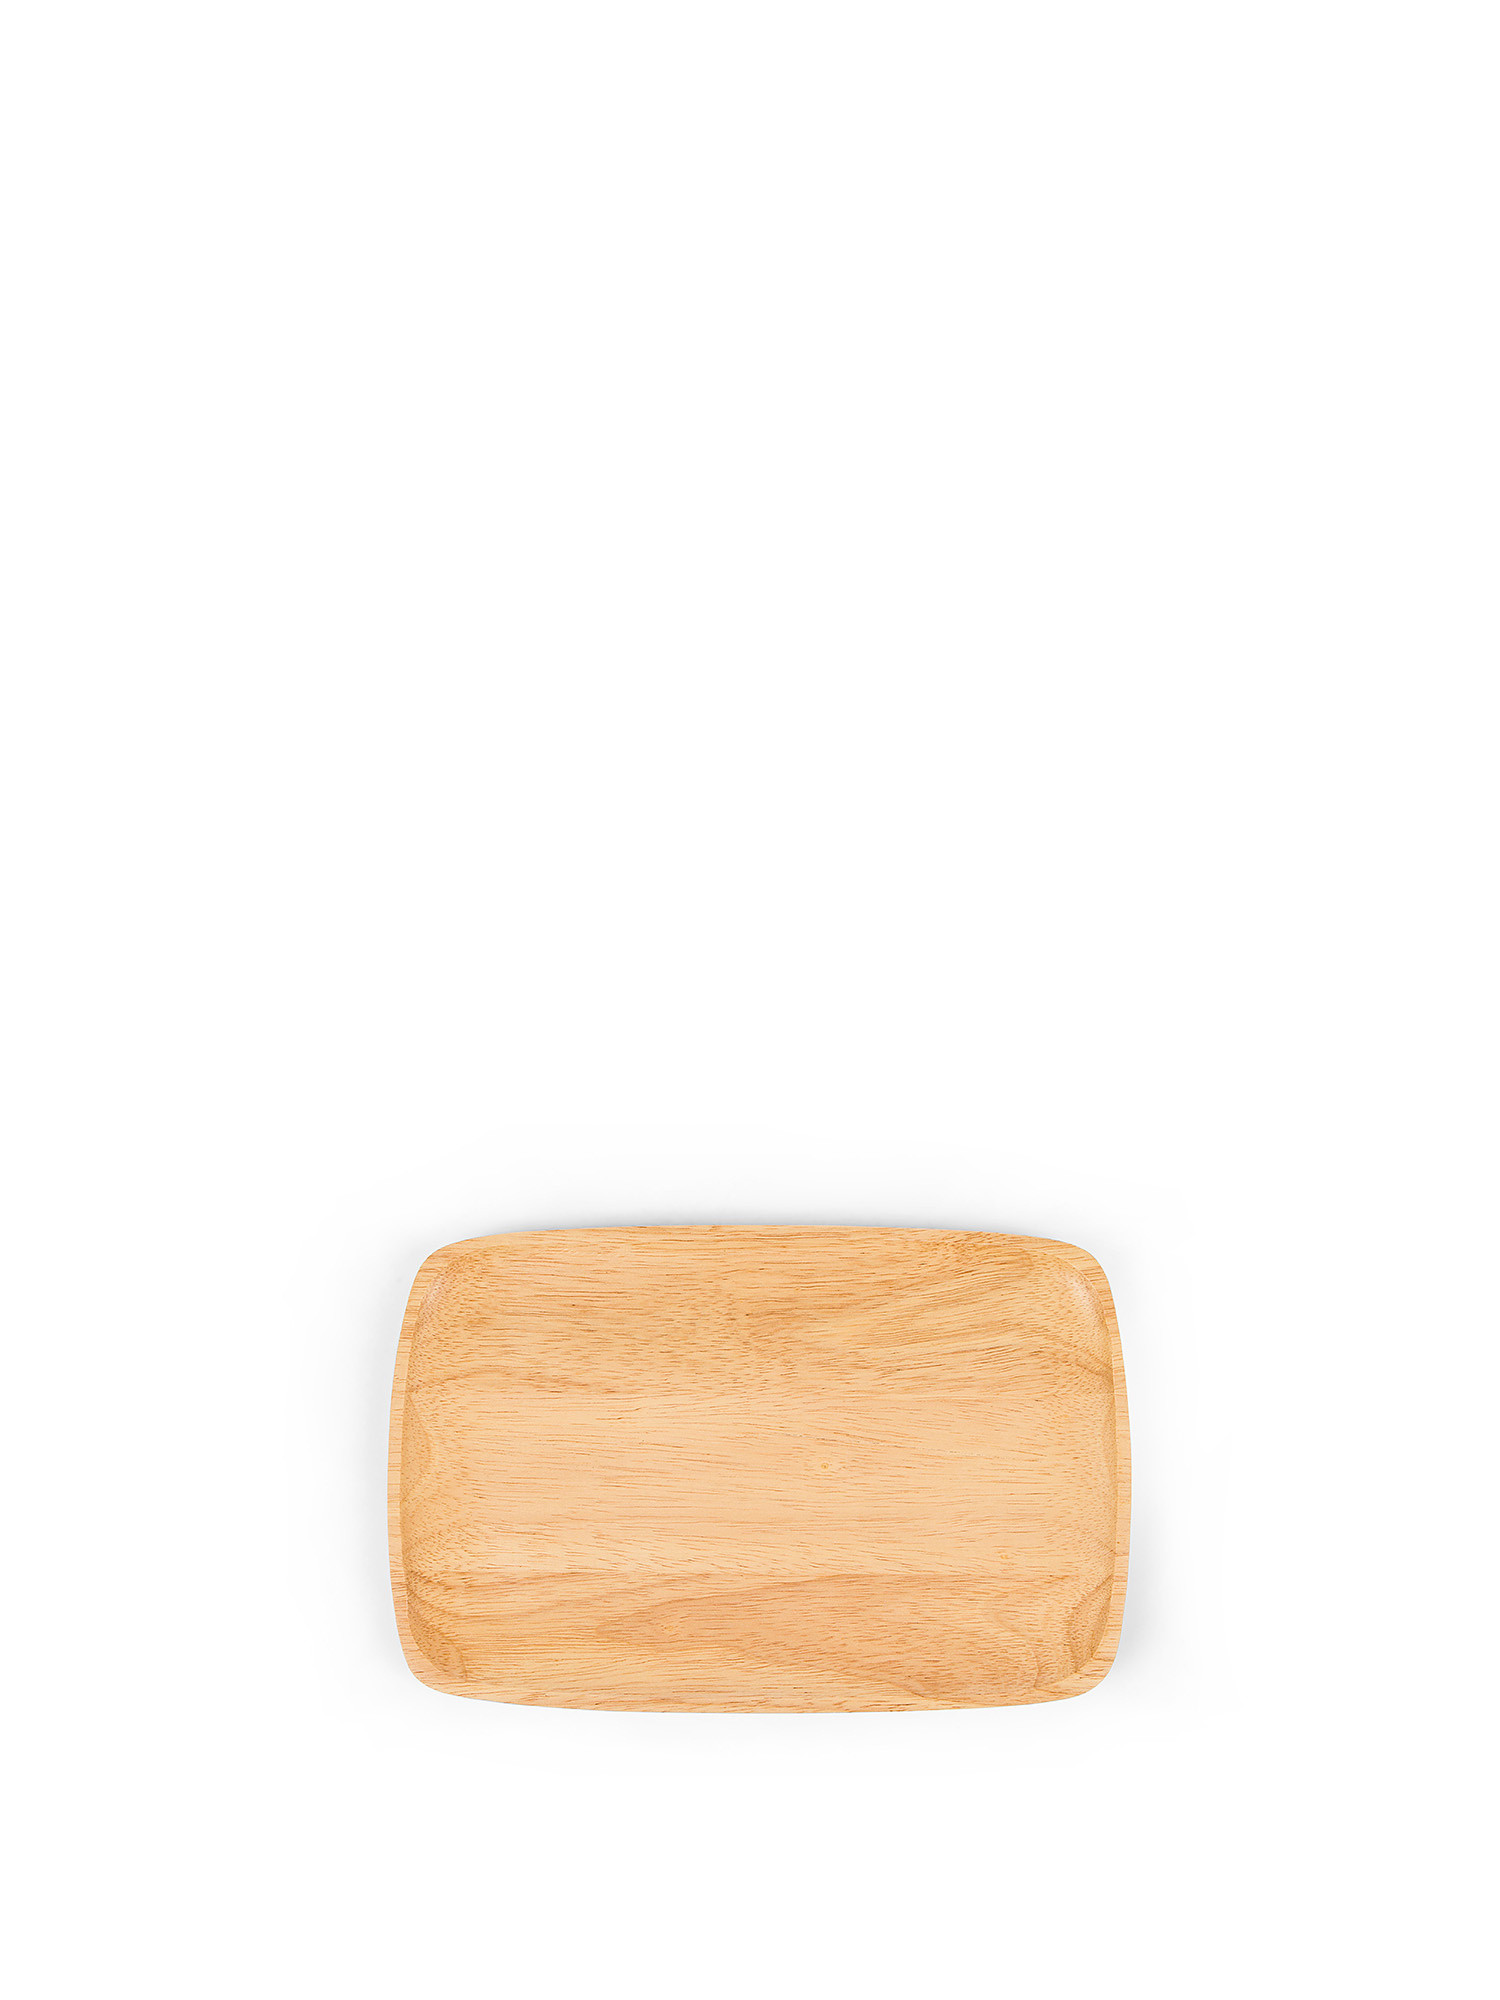 Vassoietto in legno di gomma, Beige, large image number 0